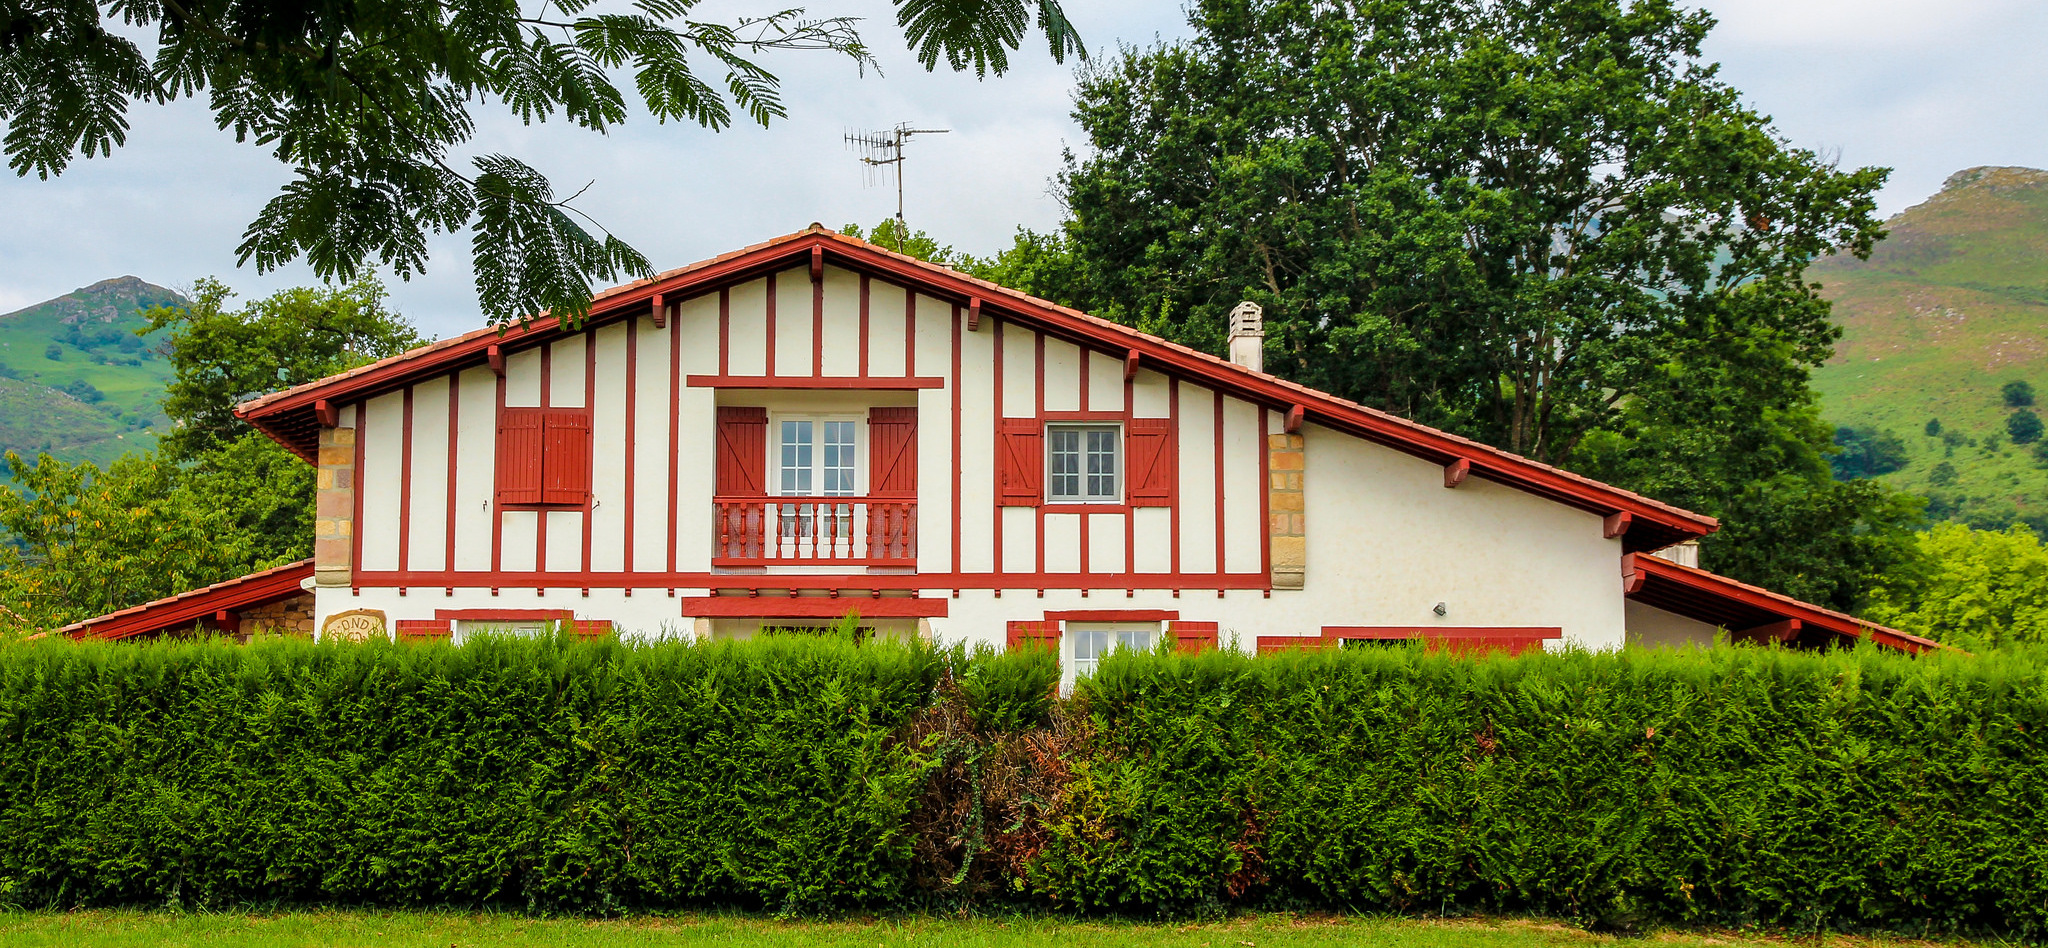 La maison basque rouge et blanche